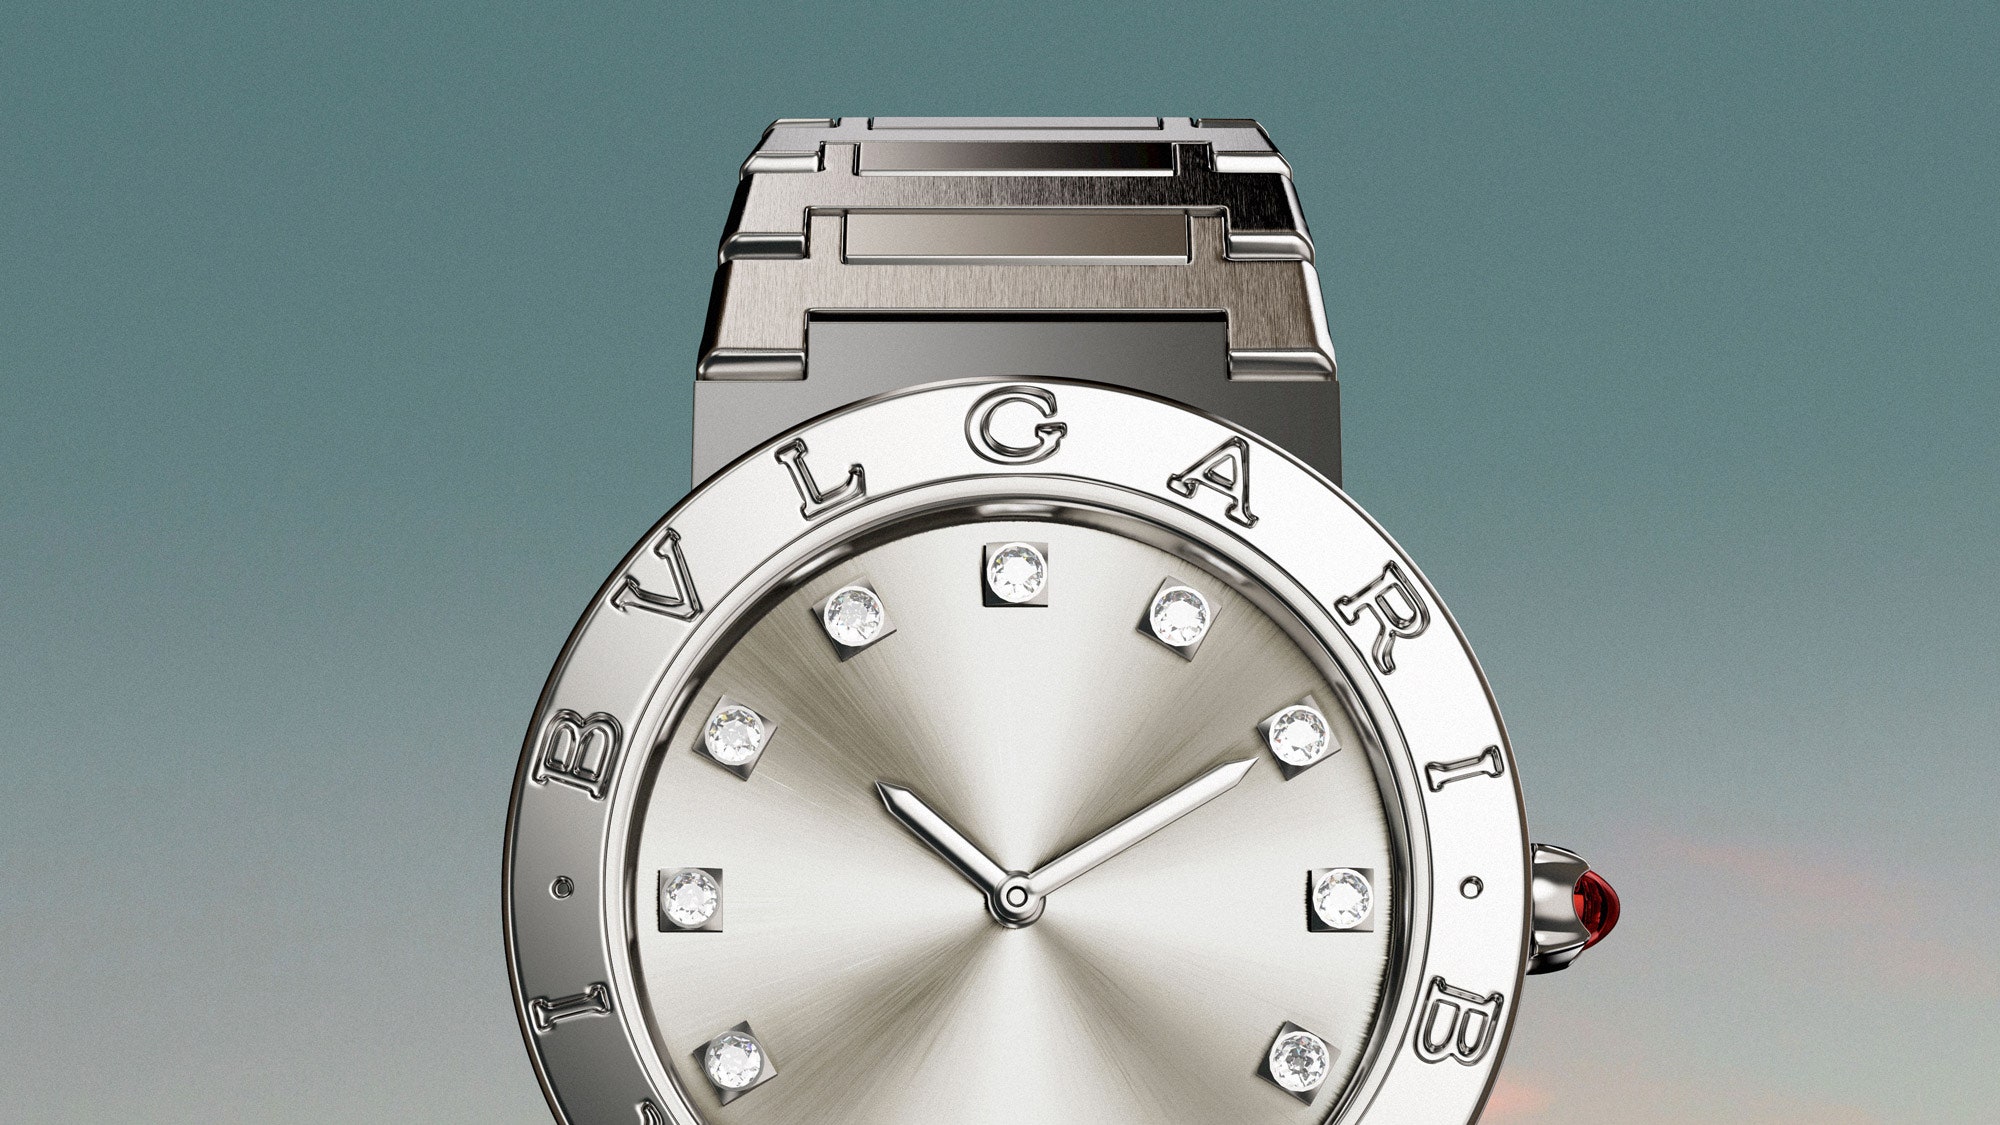 Bvlgari Bvlgari 2021 обновленные модели часов в культовой коллекции итальянского бренда